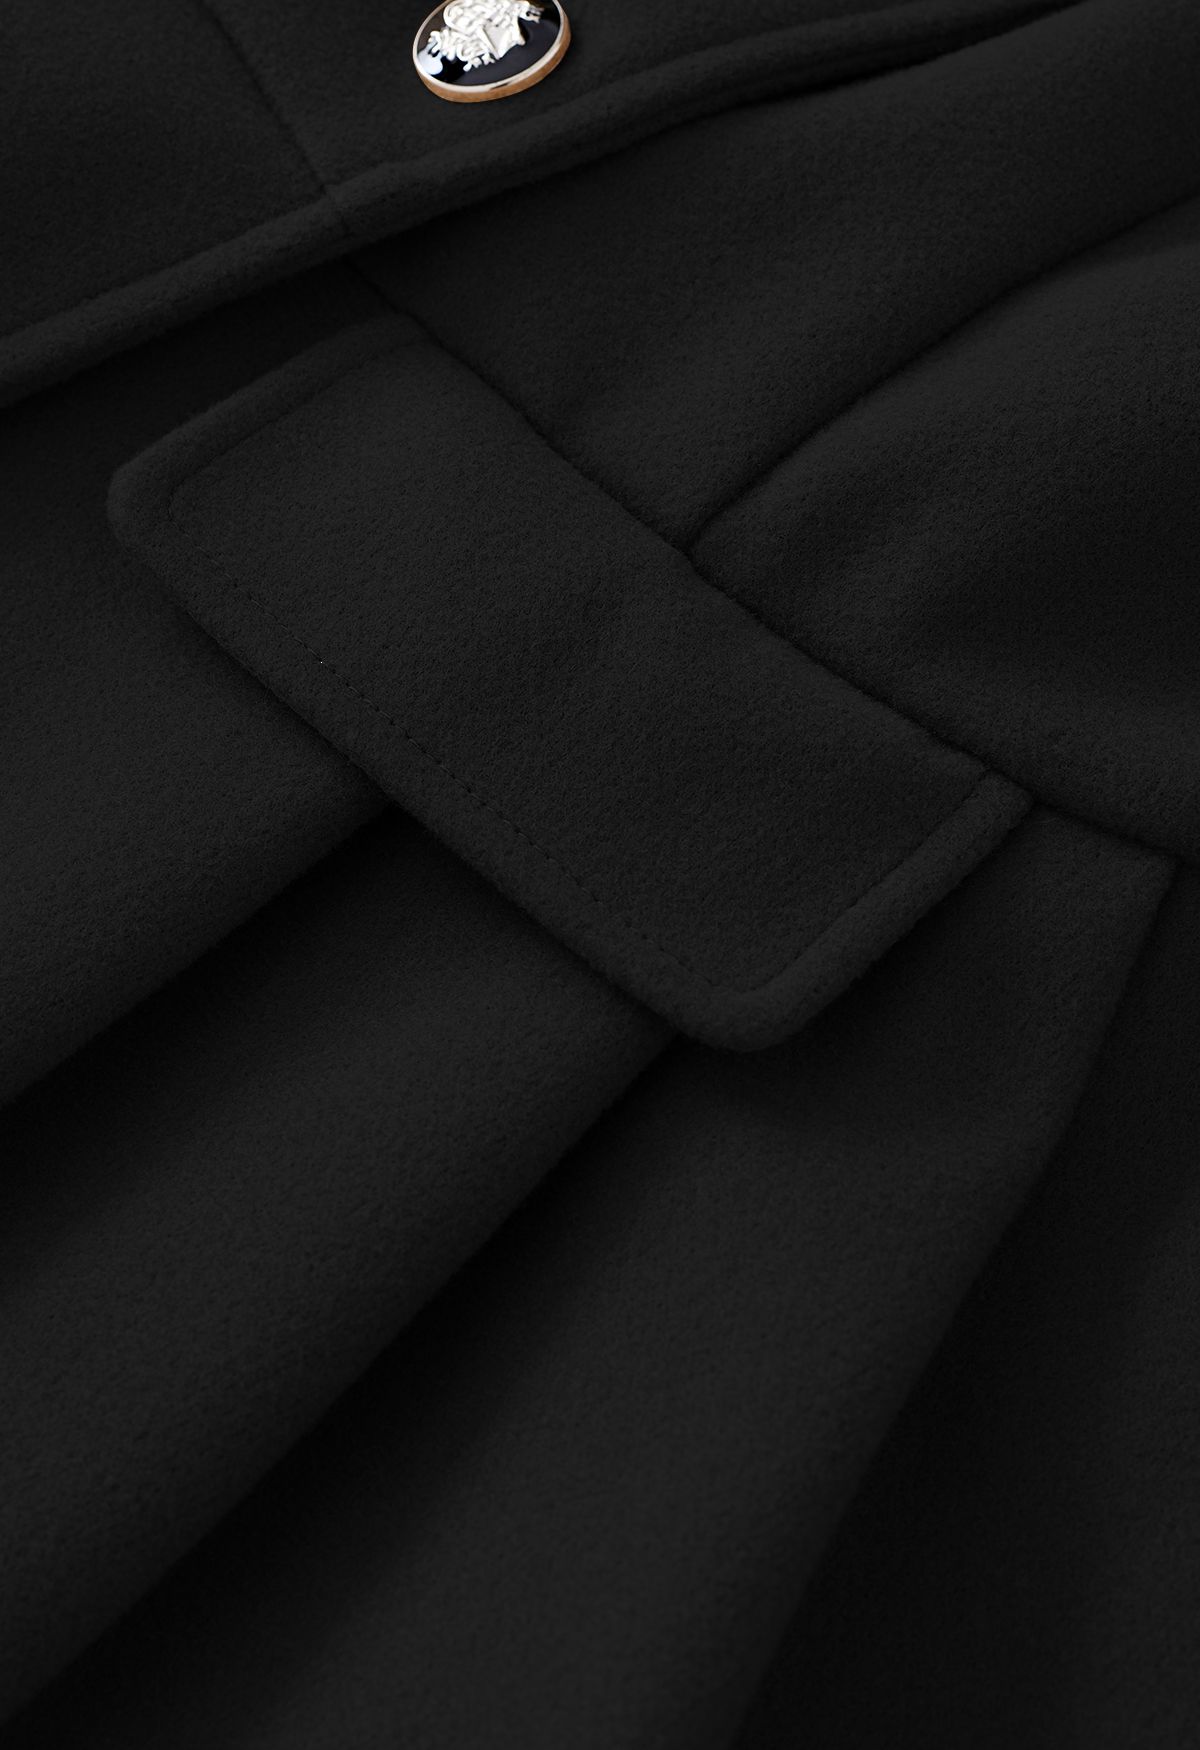 معطف متزلج مزدوج الصدر بياقة من الفرو الصناعي باللون الأسود